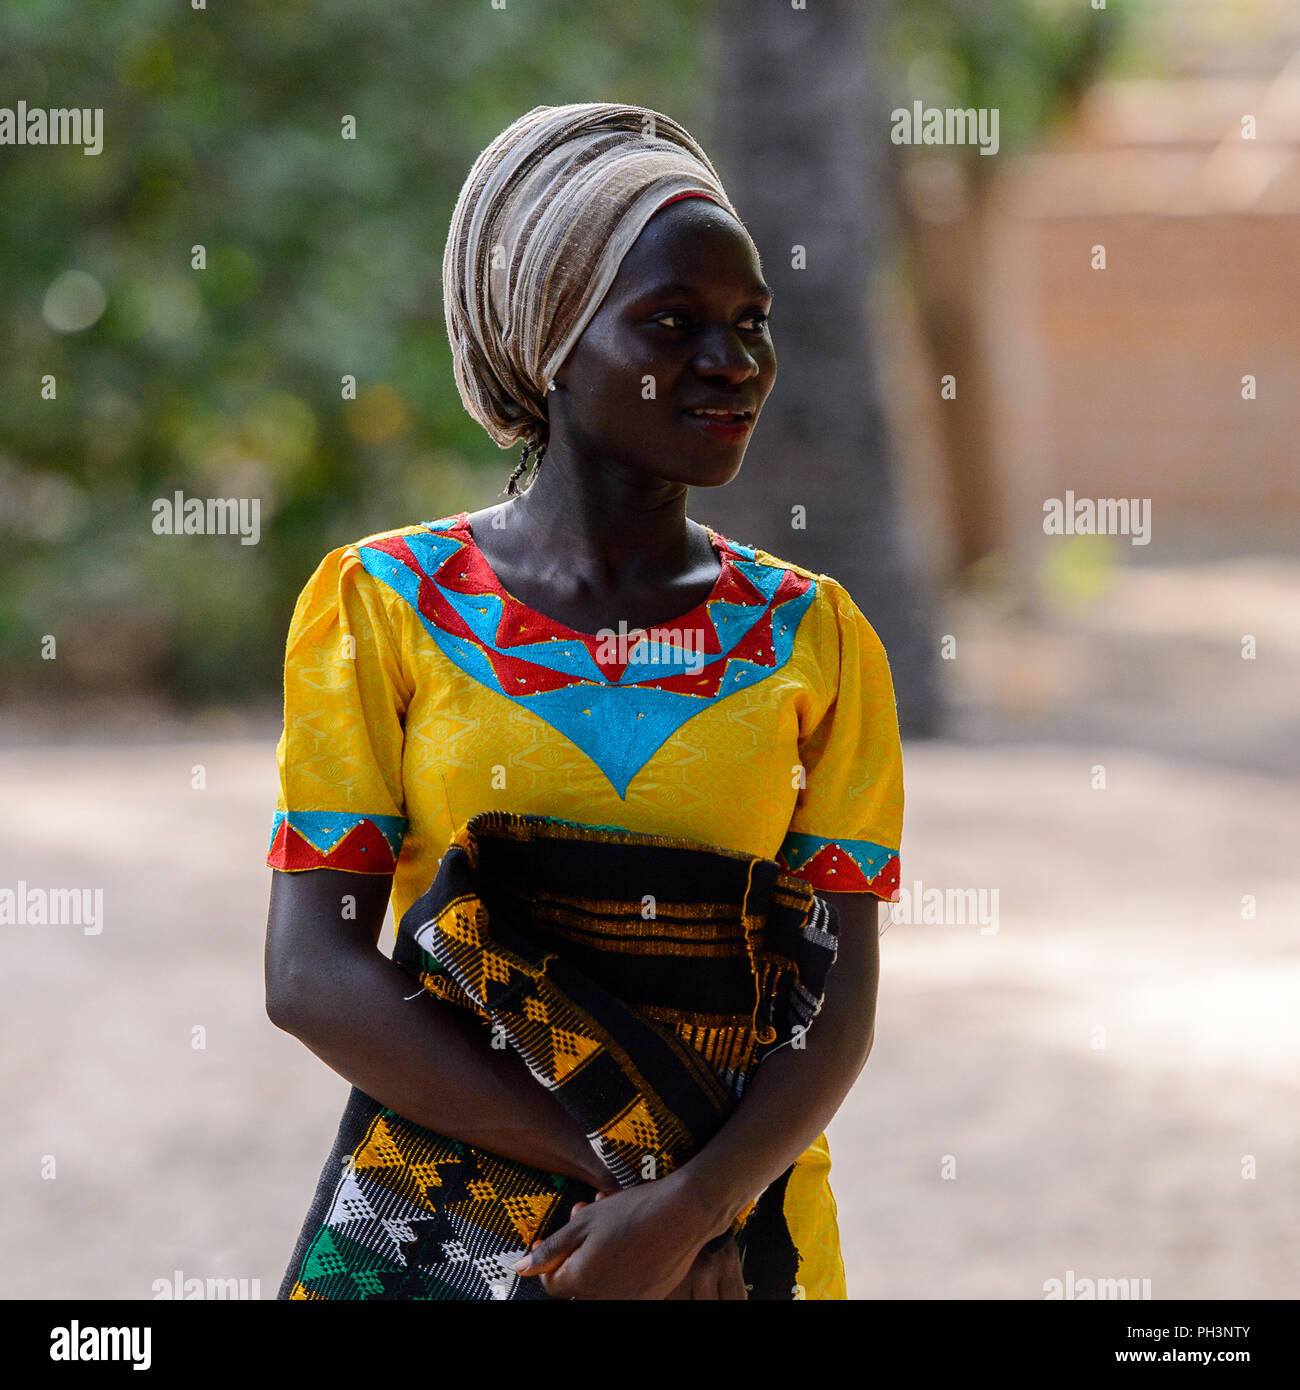 OUSSOUYE, SENEGAL - Apr 30, 2017: Unbekannter senegalesische Frau im gelben  Kleid und beige Kopftuch hält farbigen plaid im heiligen Wald in der Nähe  von Kag Stockfotografie - Alamy